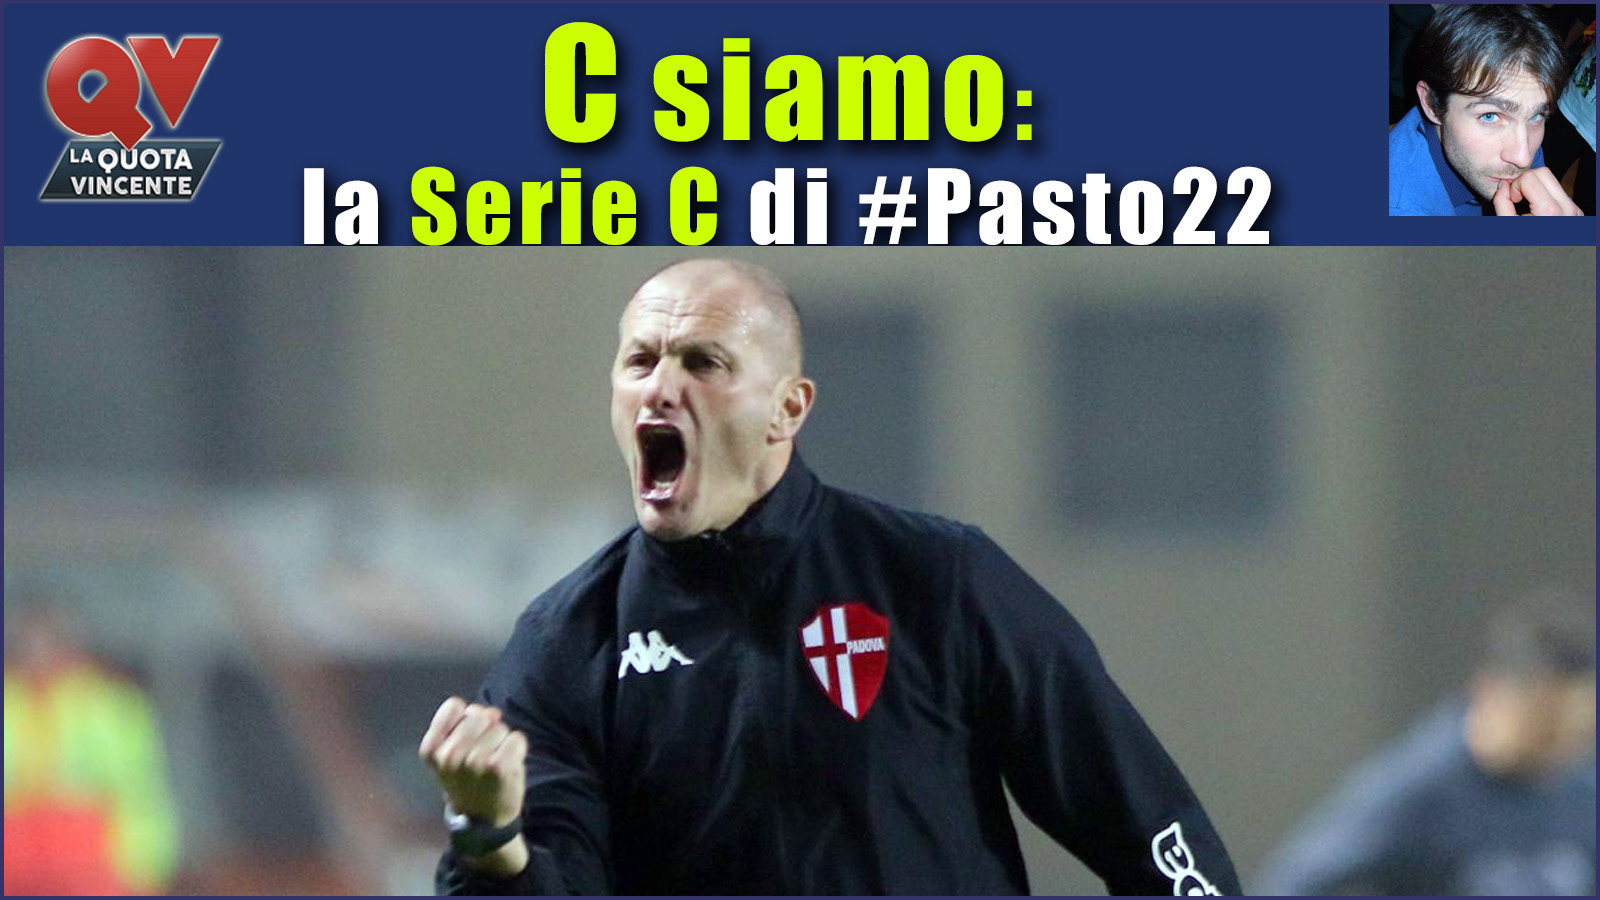 Pronostici Serie C domenica 29 ottobre: #Csiamo, il blog di #Pasto22